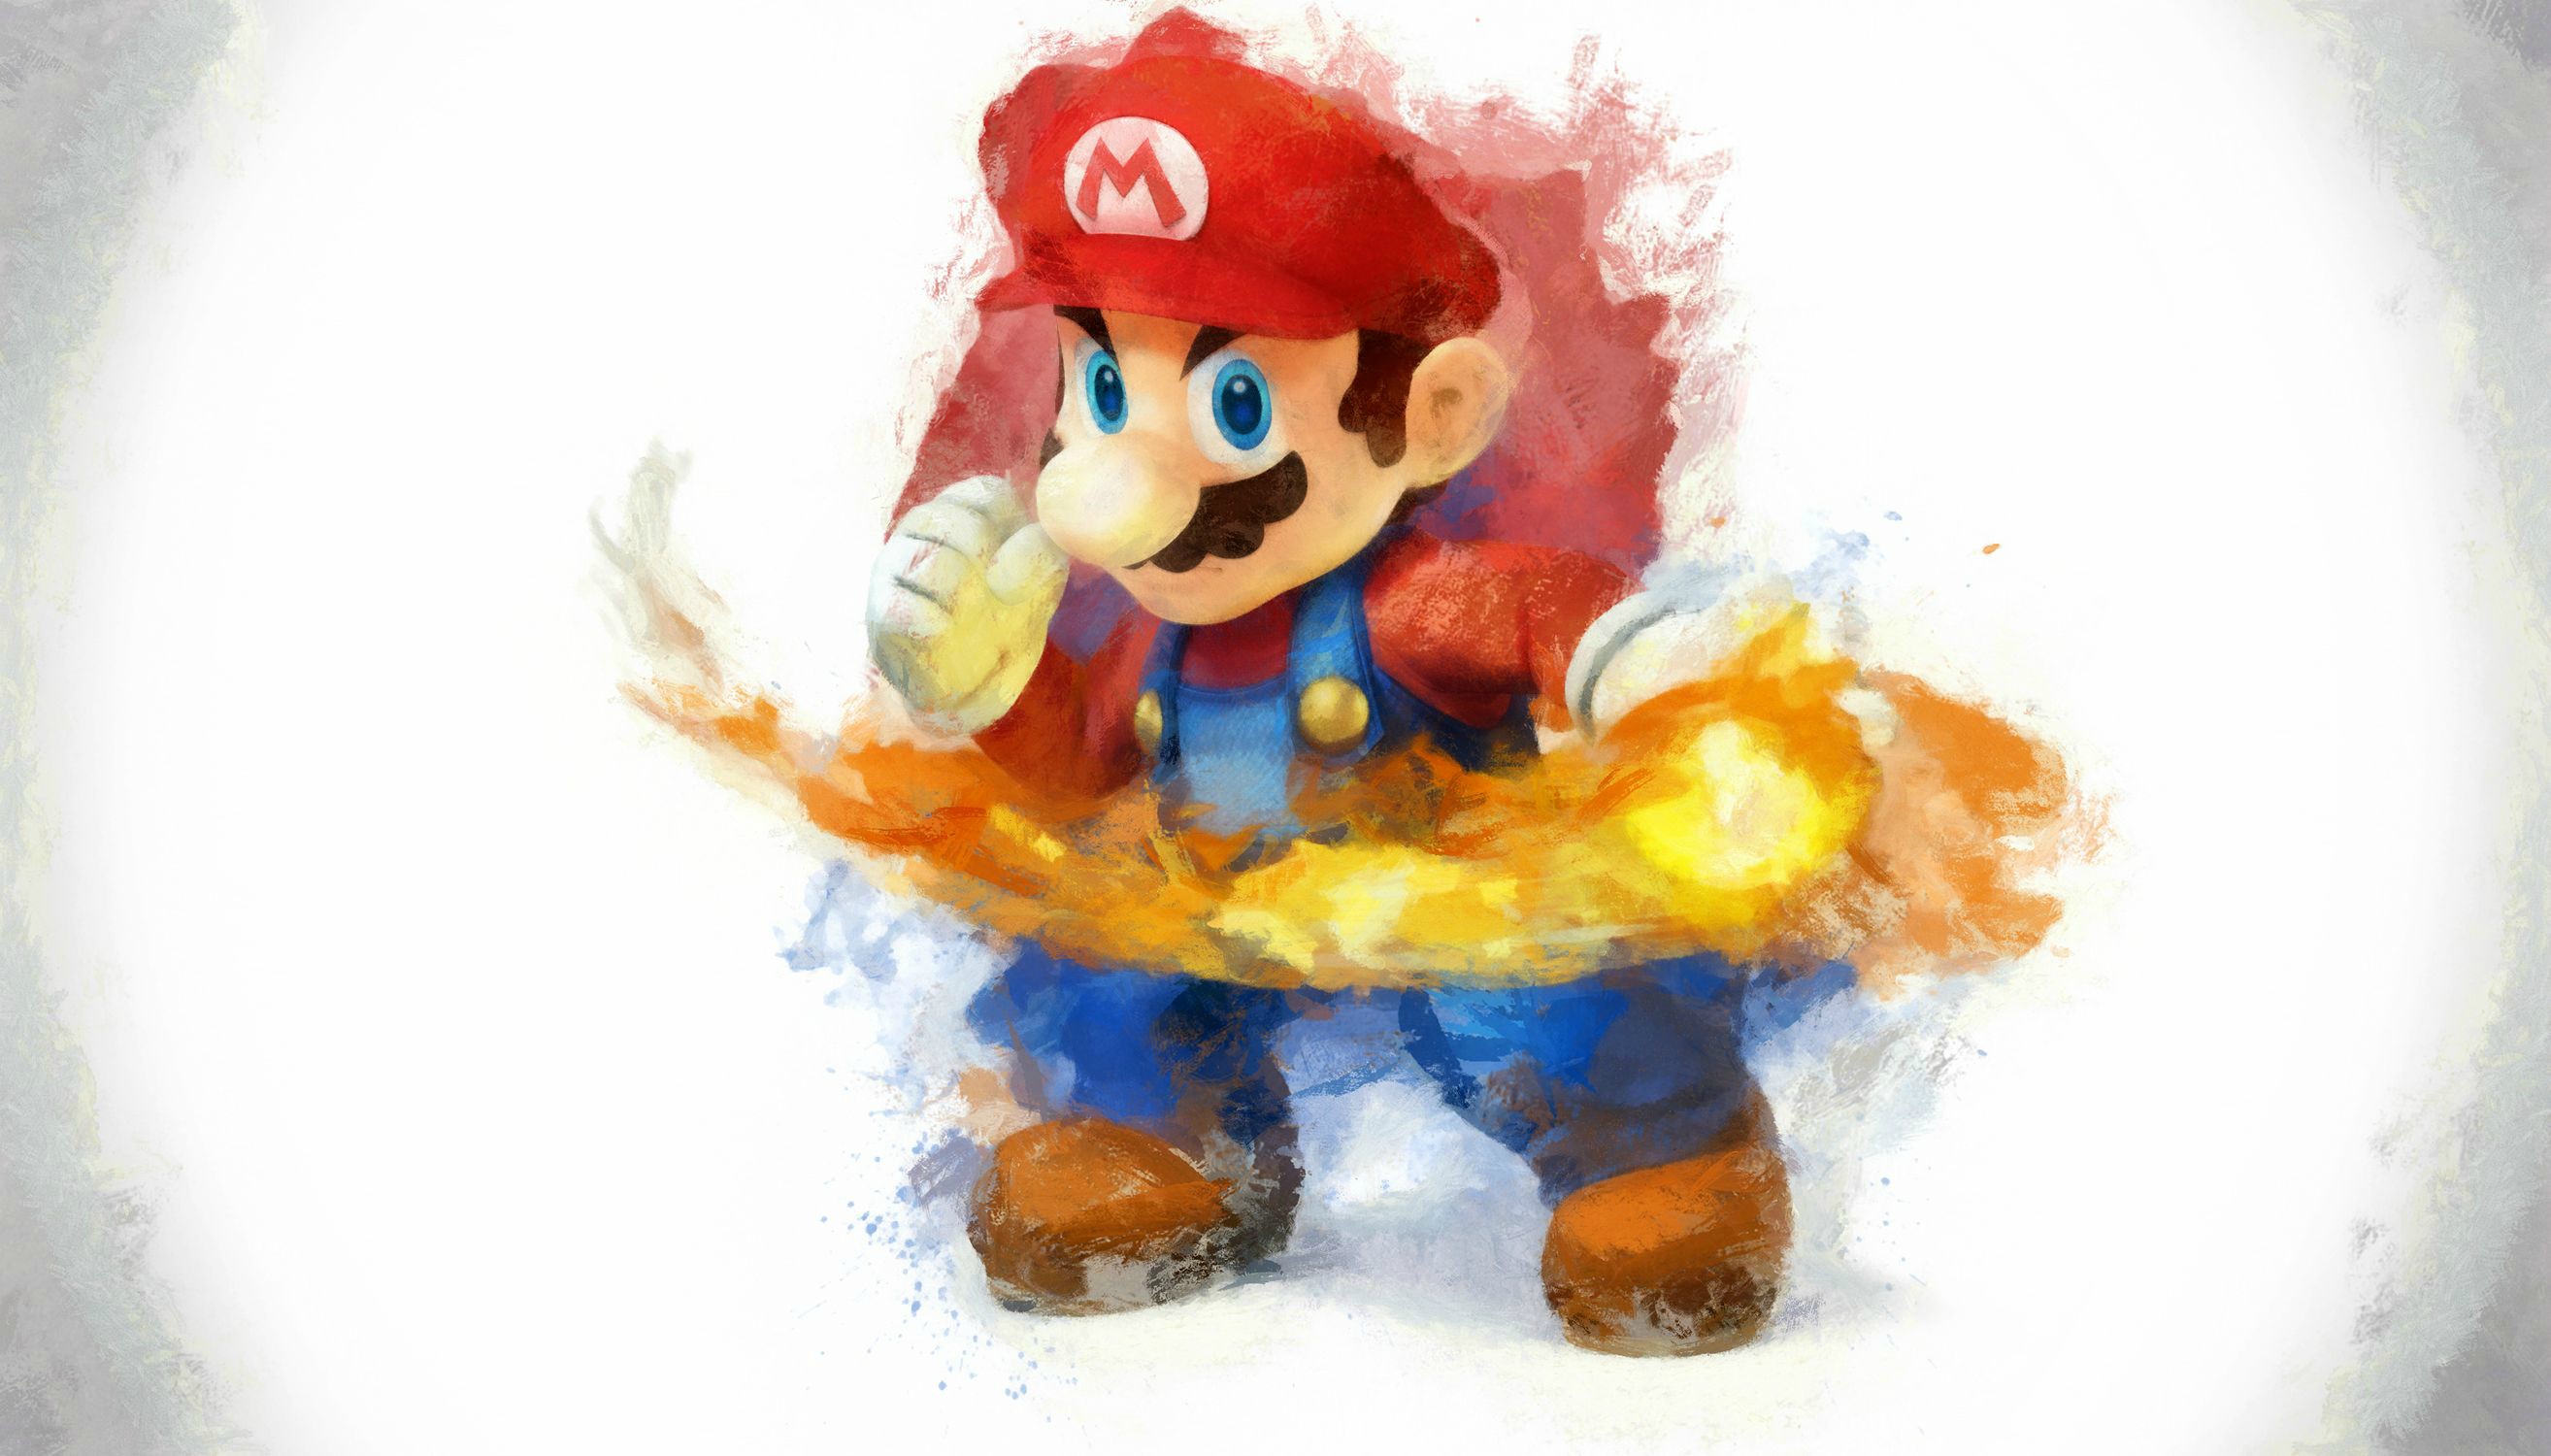 Jeux Vidéo Super Smash Bros. for Nintendo 3DS and Wii U Fond d'écran HD | Image